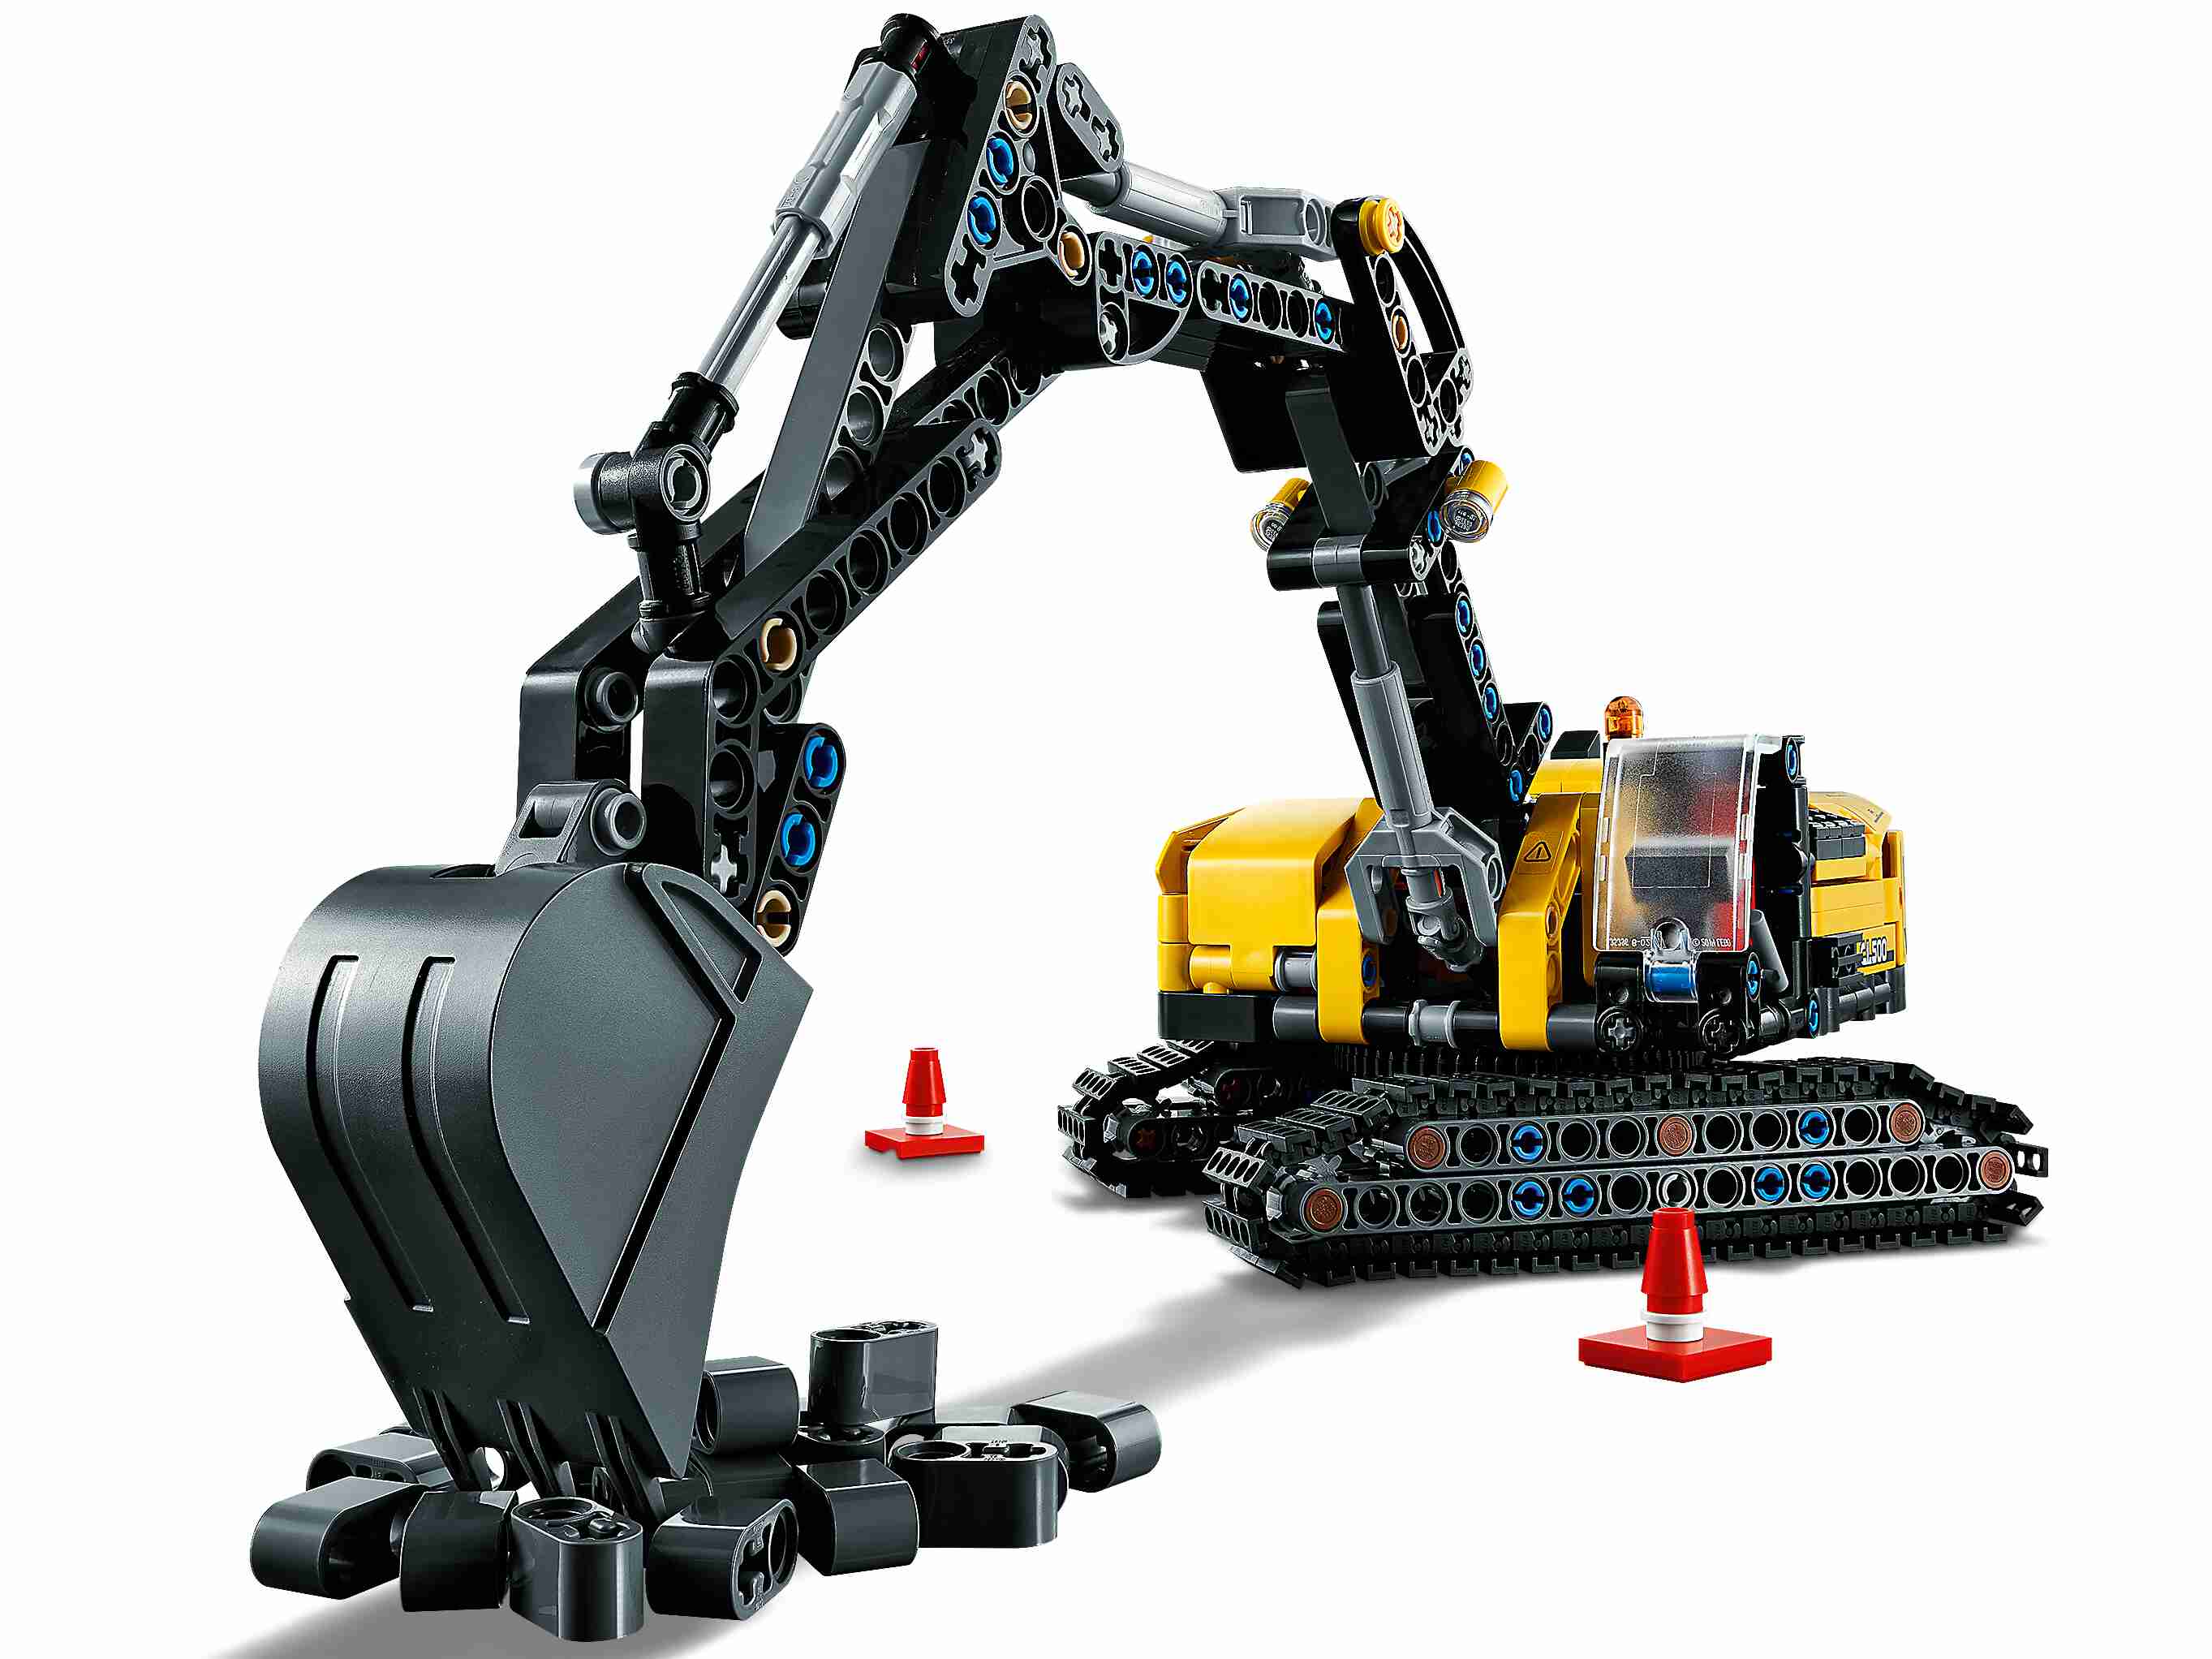 LEGO 42121 Technic Hydraulikbagger - Traktor 2-in-1 Modell, Bagger Baufahrzeug